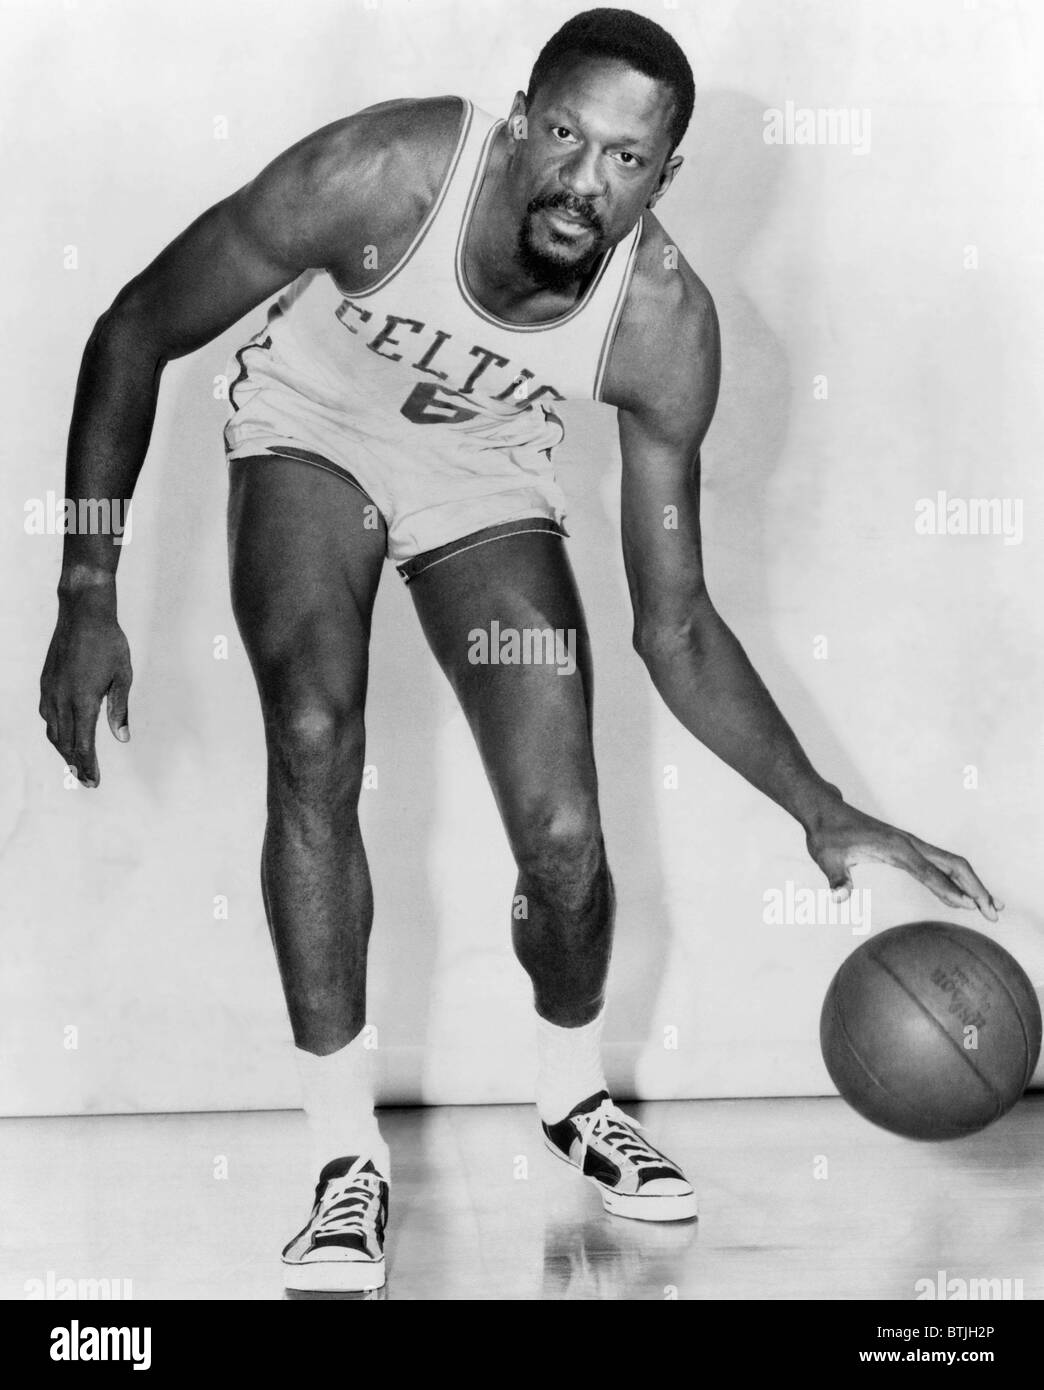 Bill Russell, US-amerikanischer Basketballspieler, der für die Boston  Celtics, ca. 1960er Jahre gespielt. CSU-Archiv/Courtesy Everett Collectio  Stockfotografie - Alamy